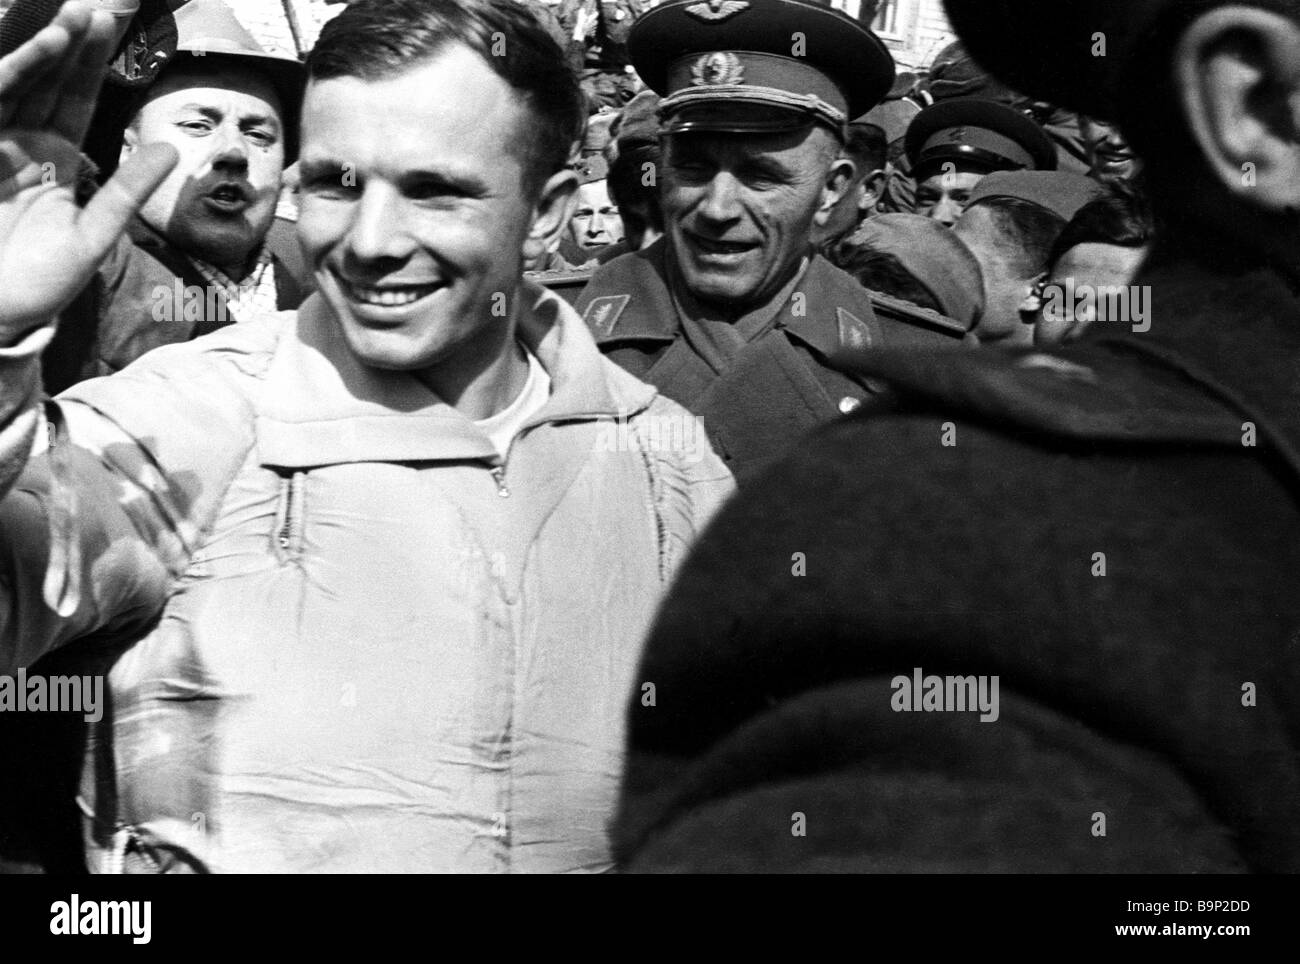 Какую награду гагарин получил сразу после приземления. Гагарин. Приземление 1961. Фото приземления Юрия Гагарина.